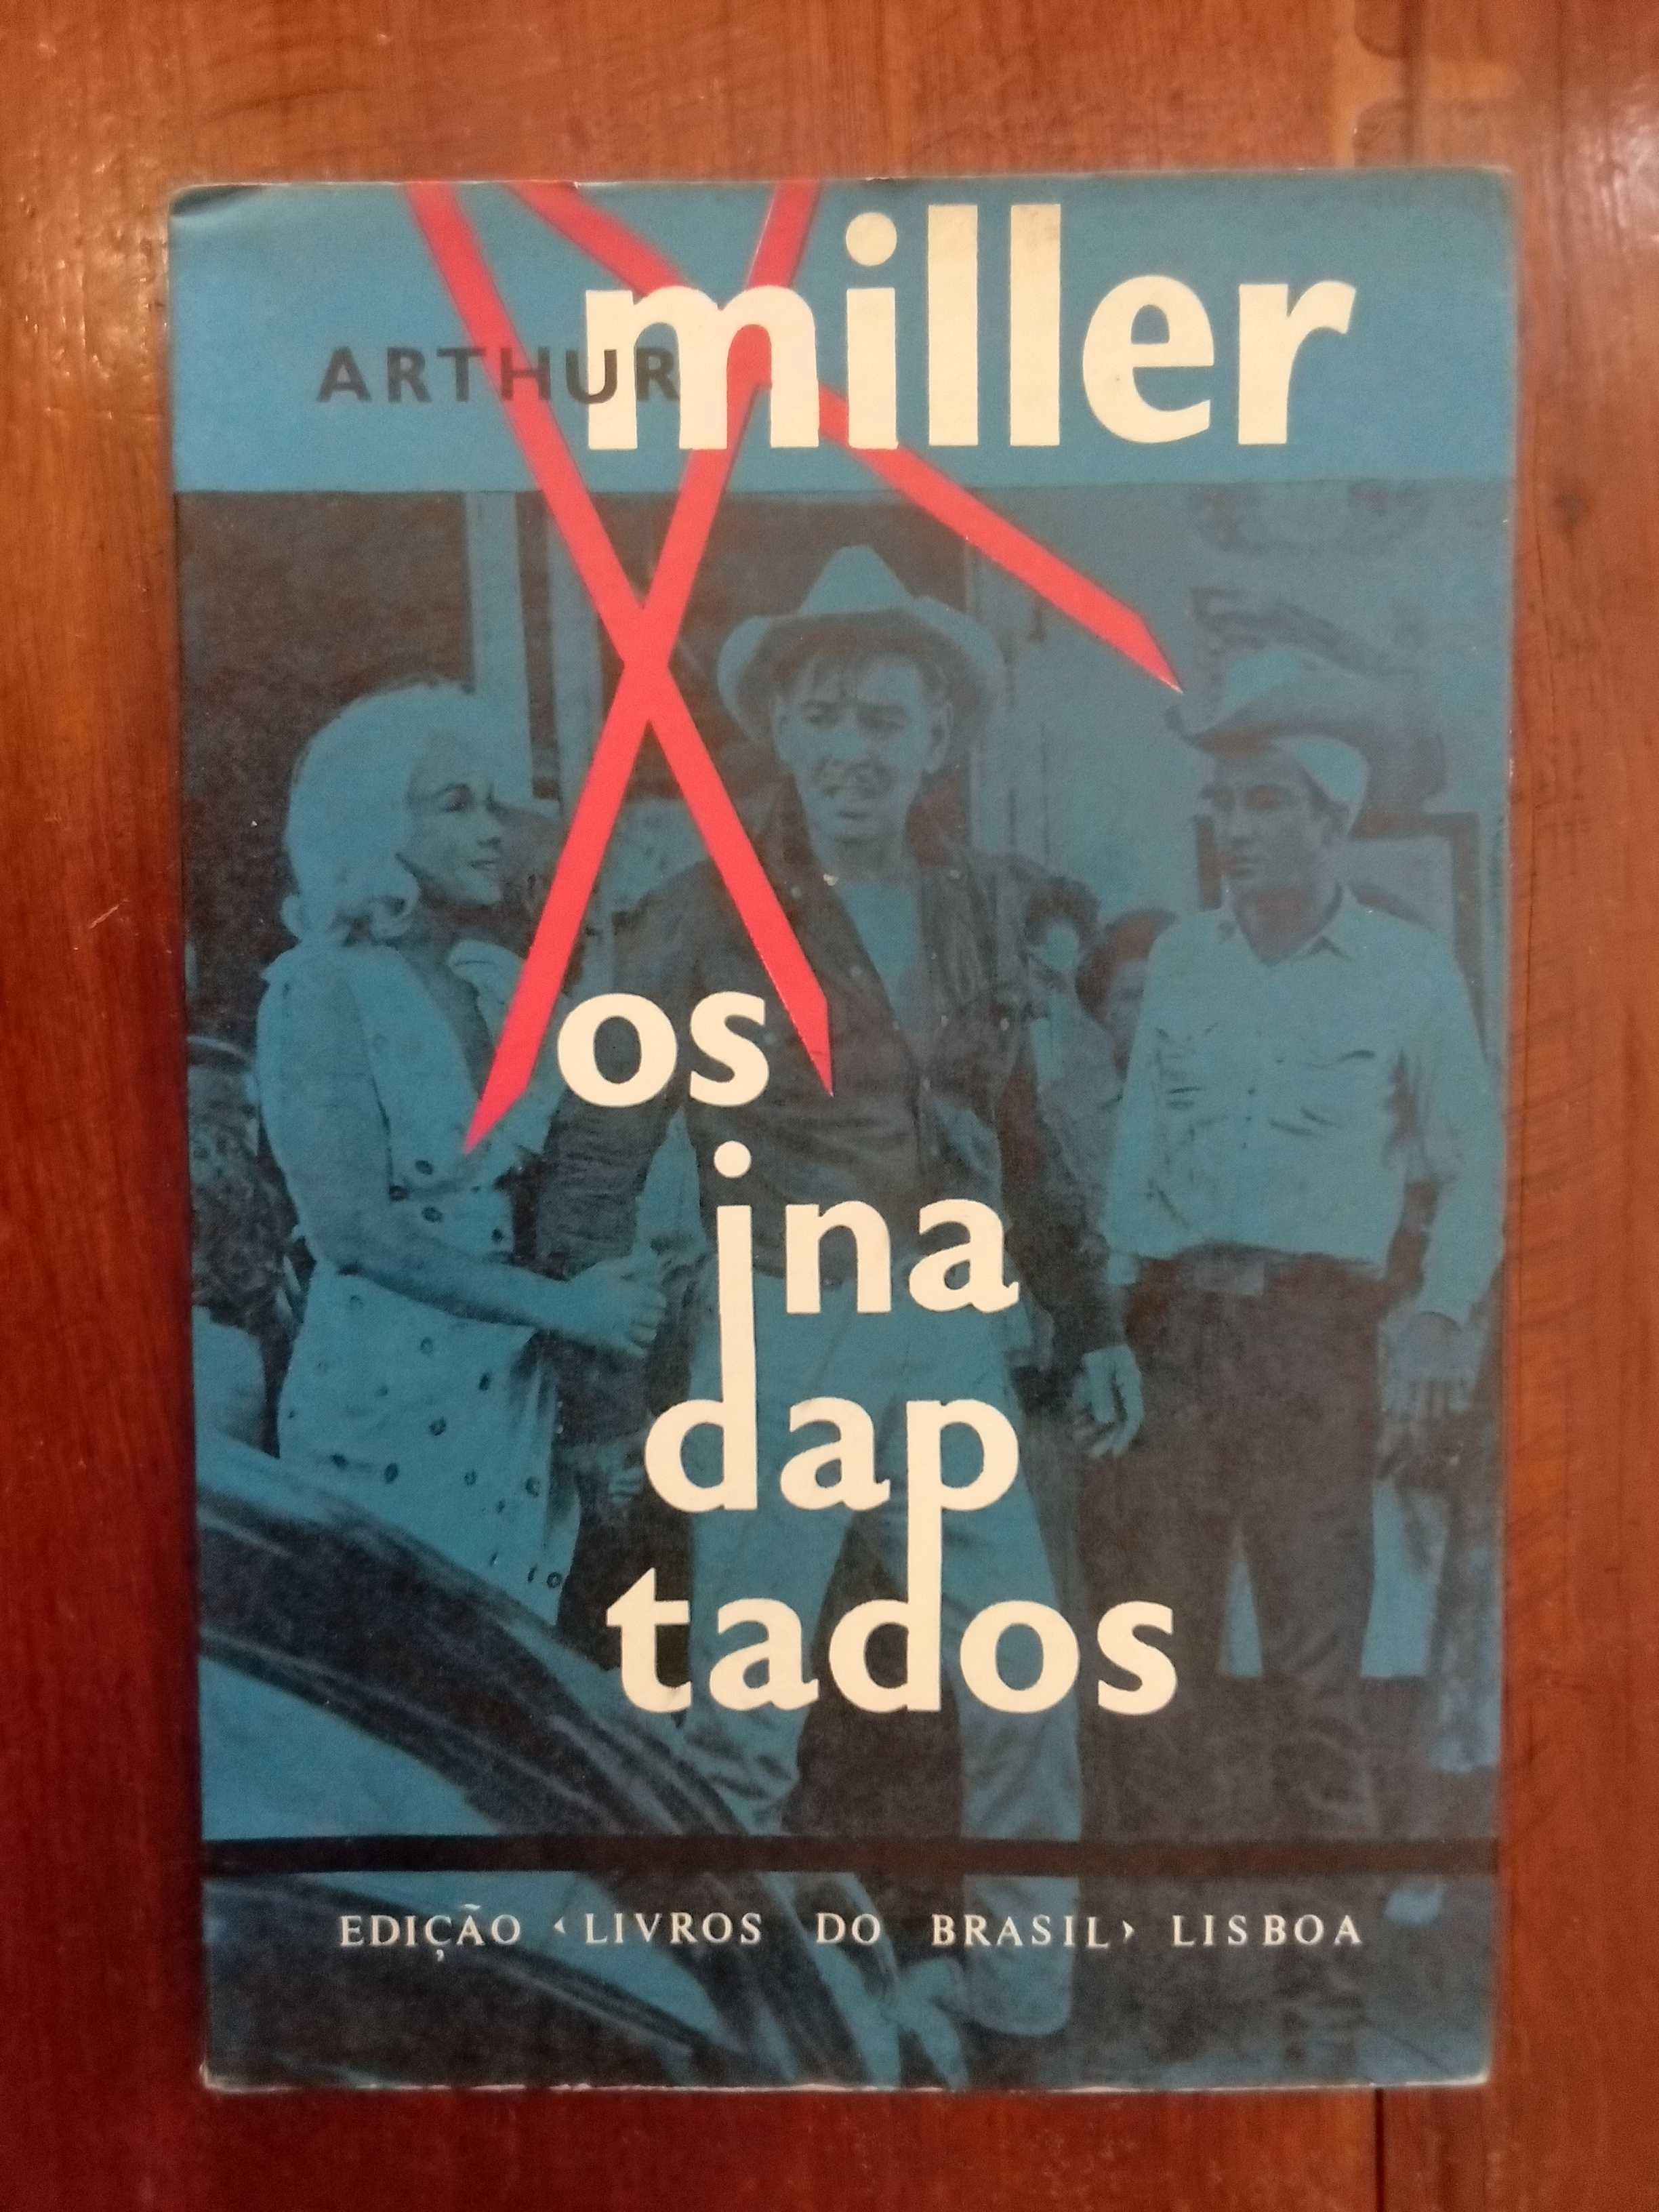 Arthur Miller - Os inadaptados